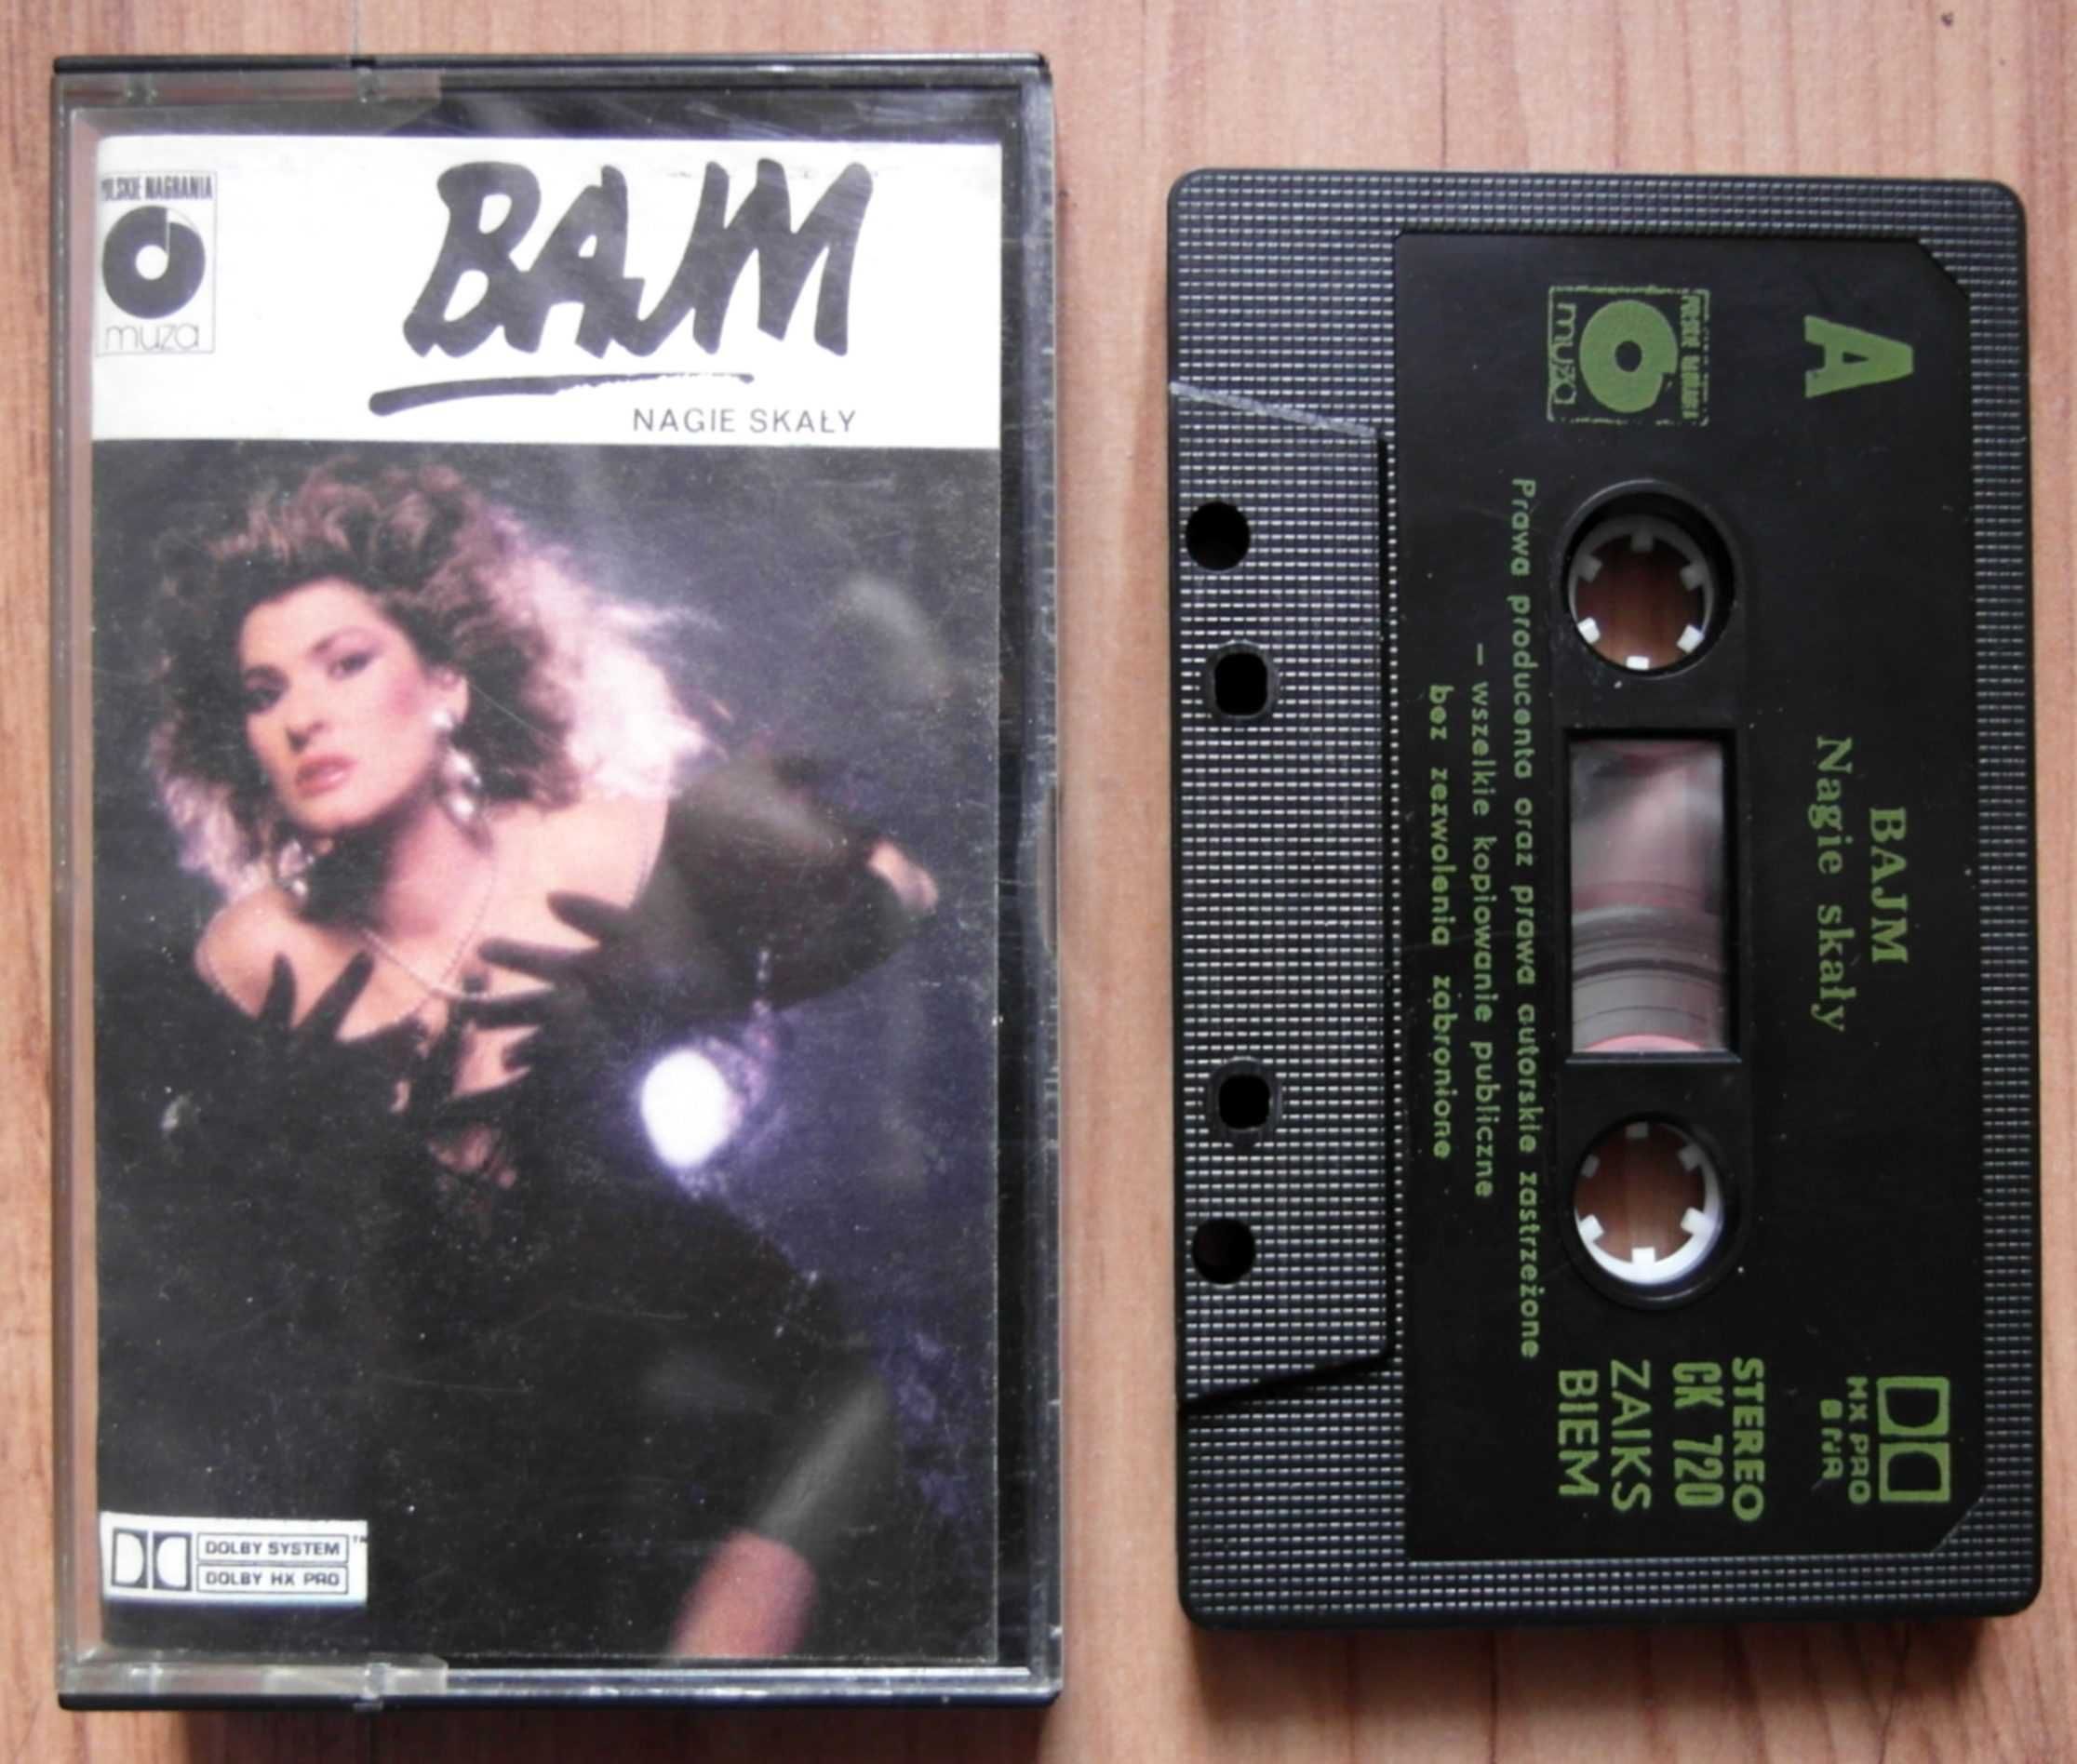 BAJM - Nagie Skały - kaseta magnetofonowa 1988 Muza - Wrocław wysyłka